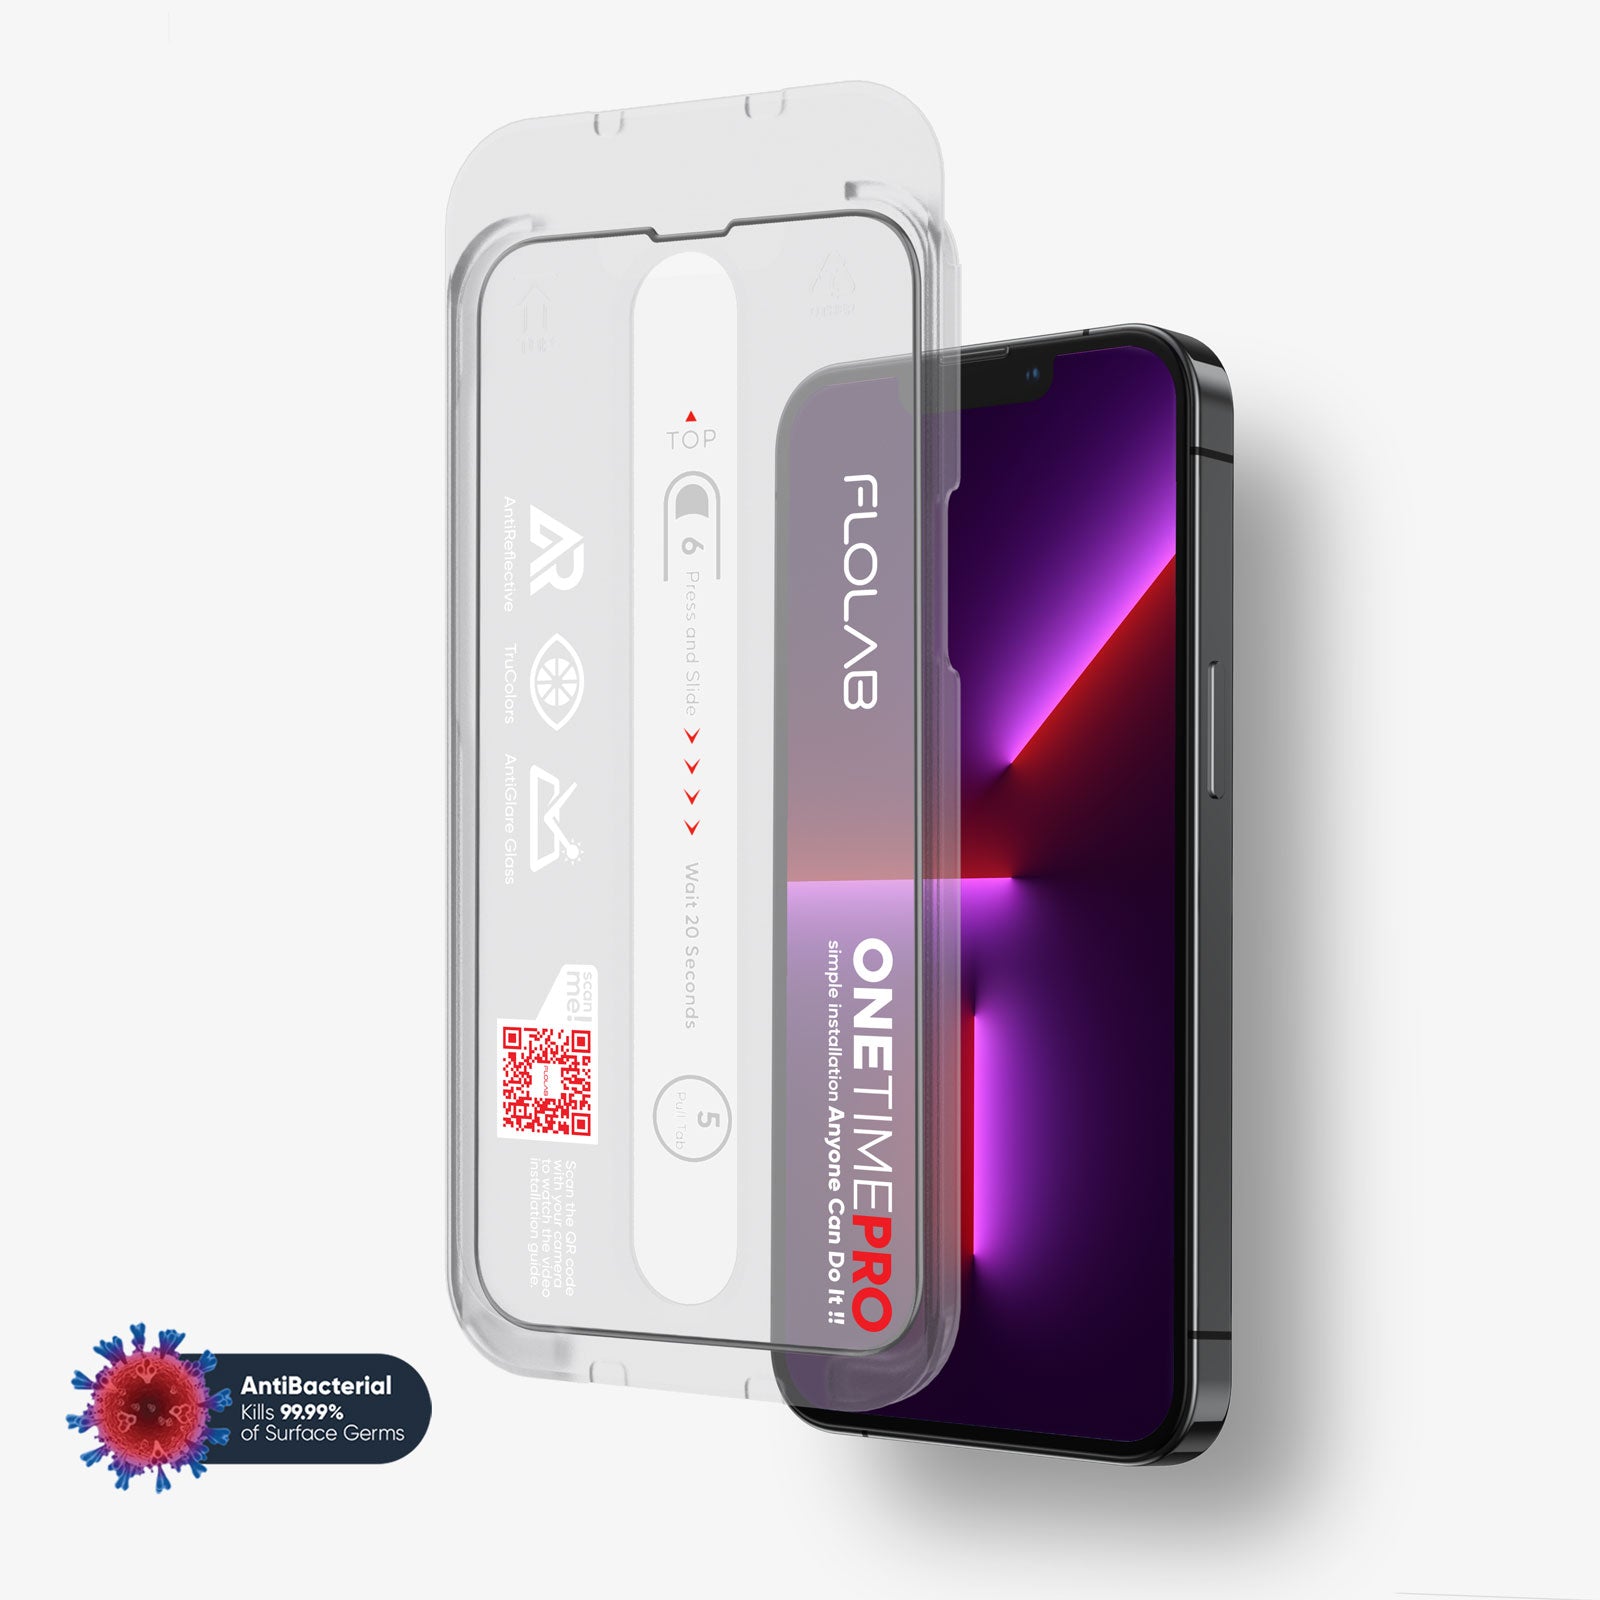 FLOLAB I iPhone 11 Pro Max Screen Protectors